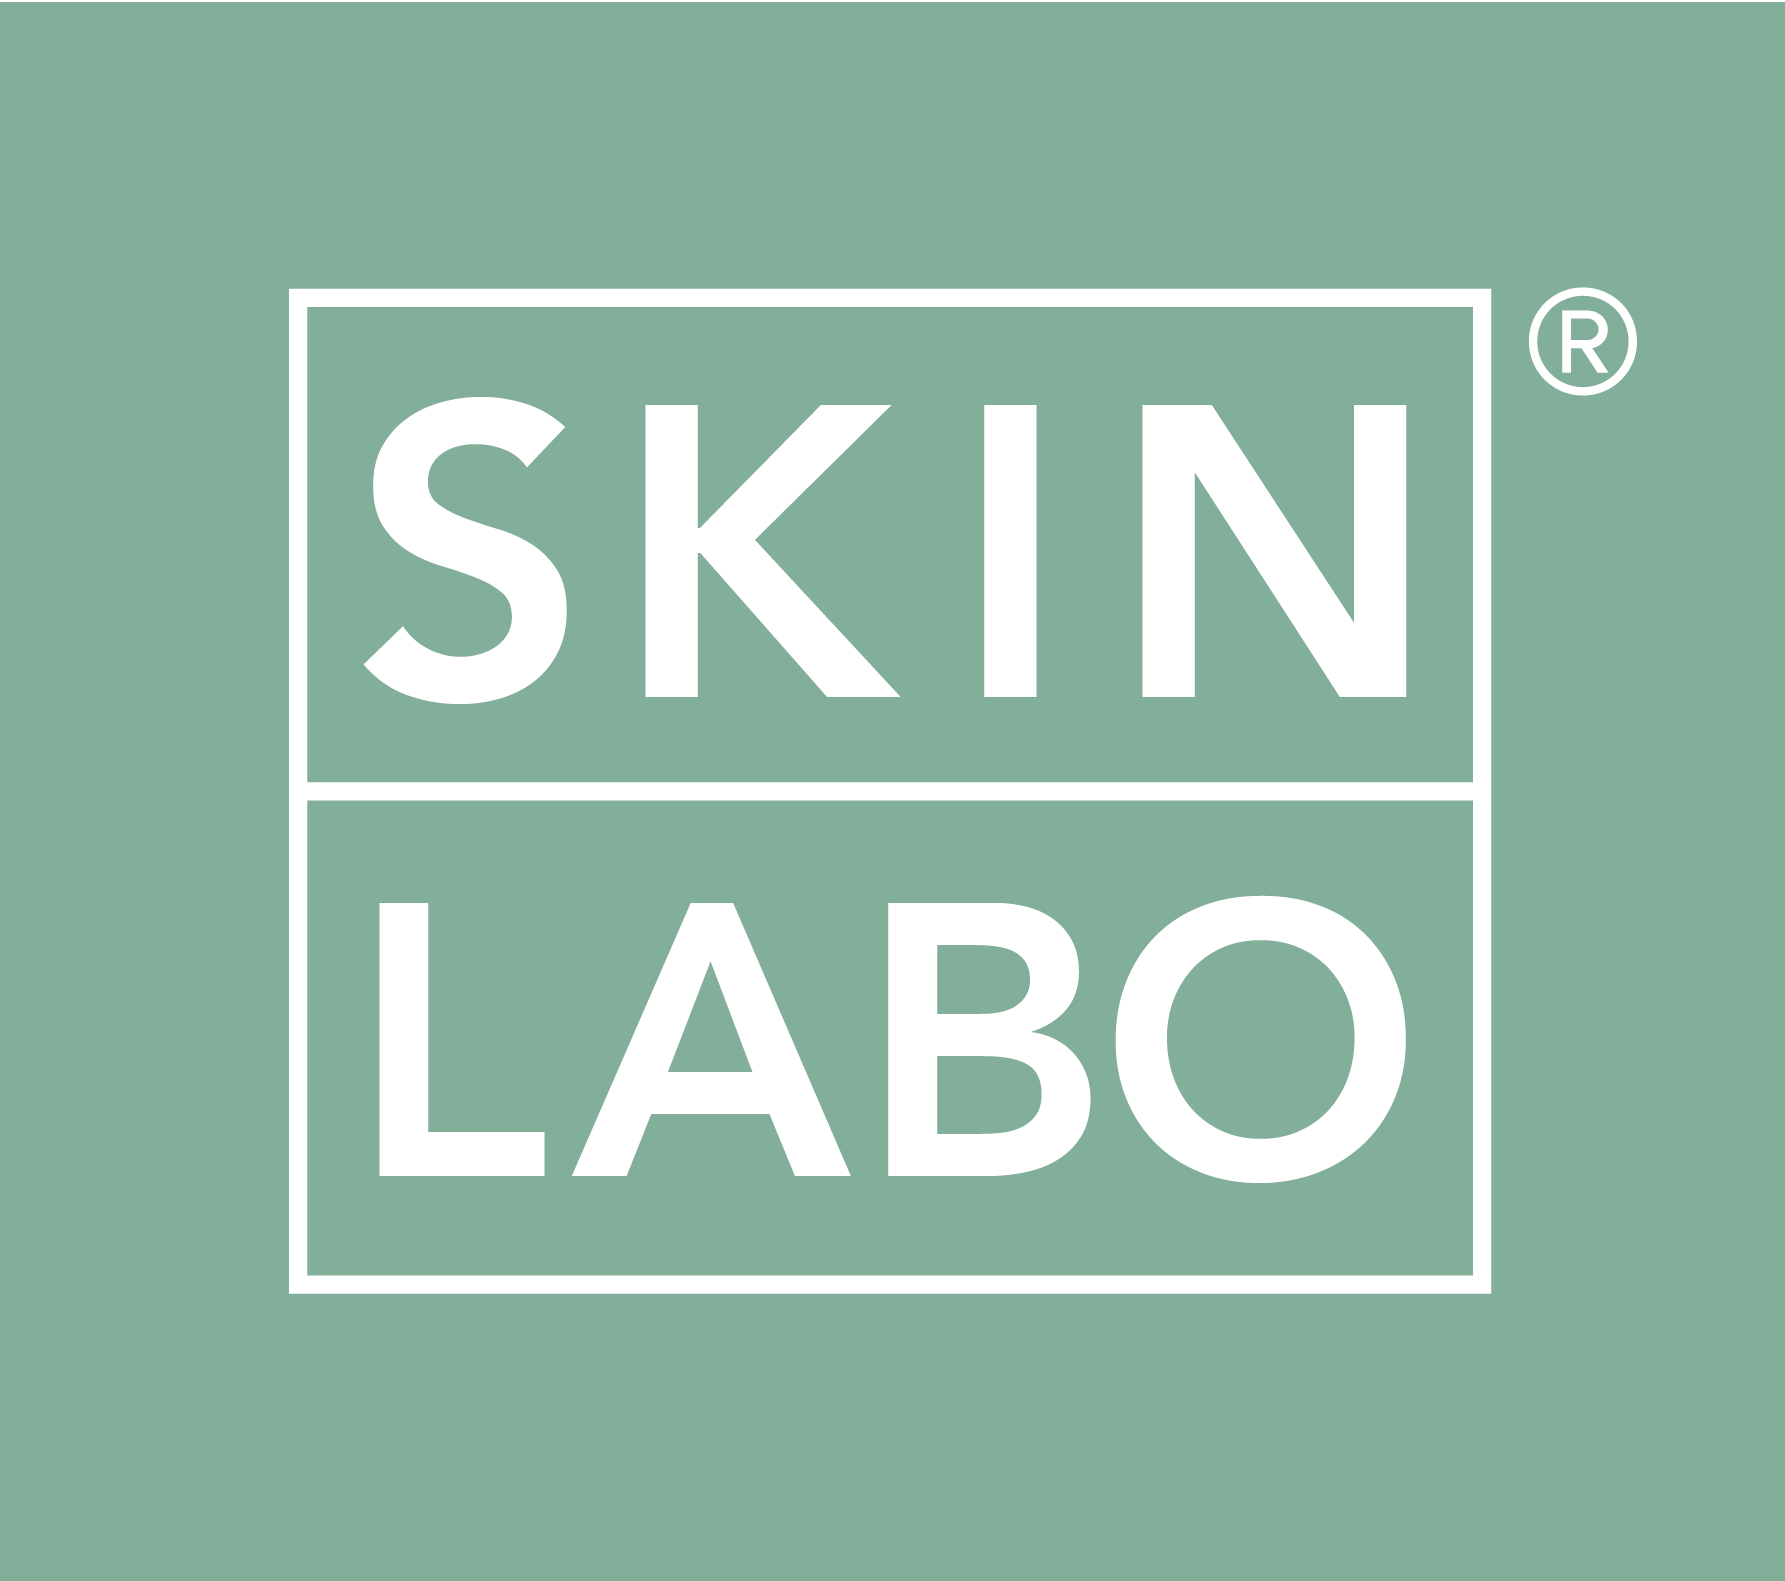 Skinlabo store logo